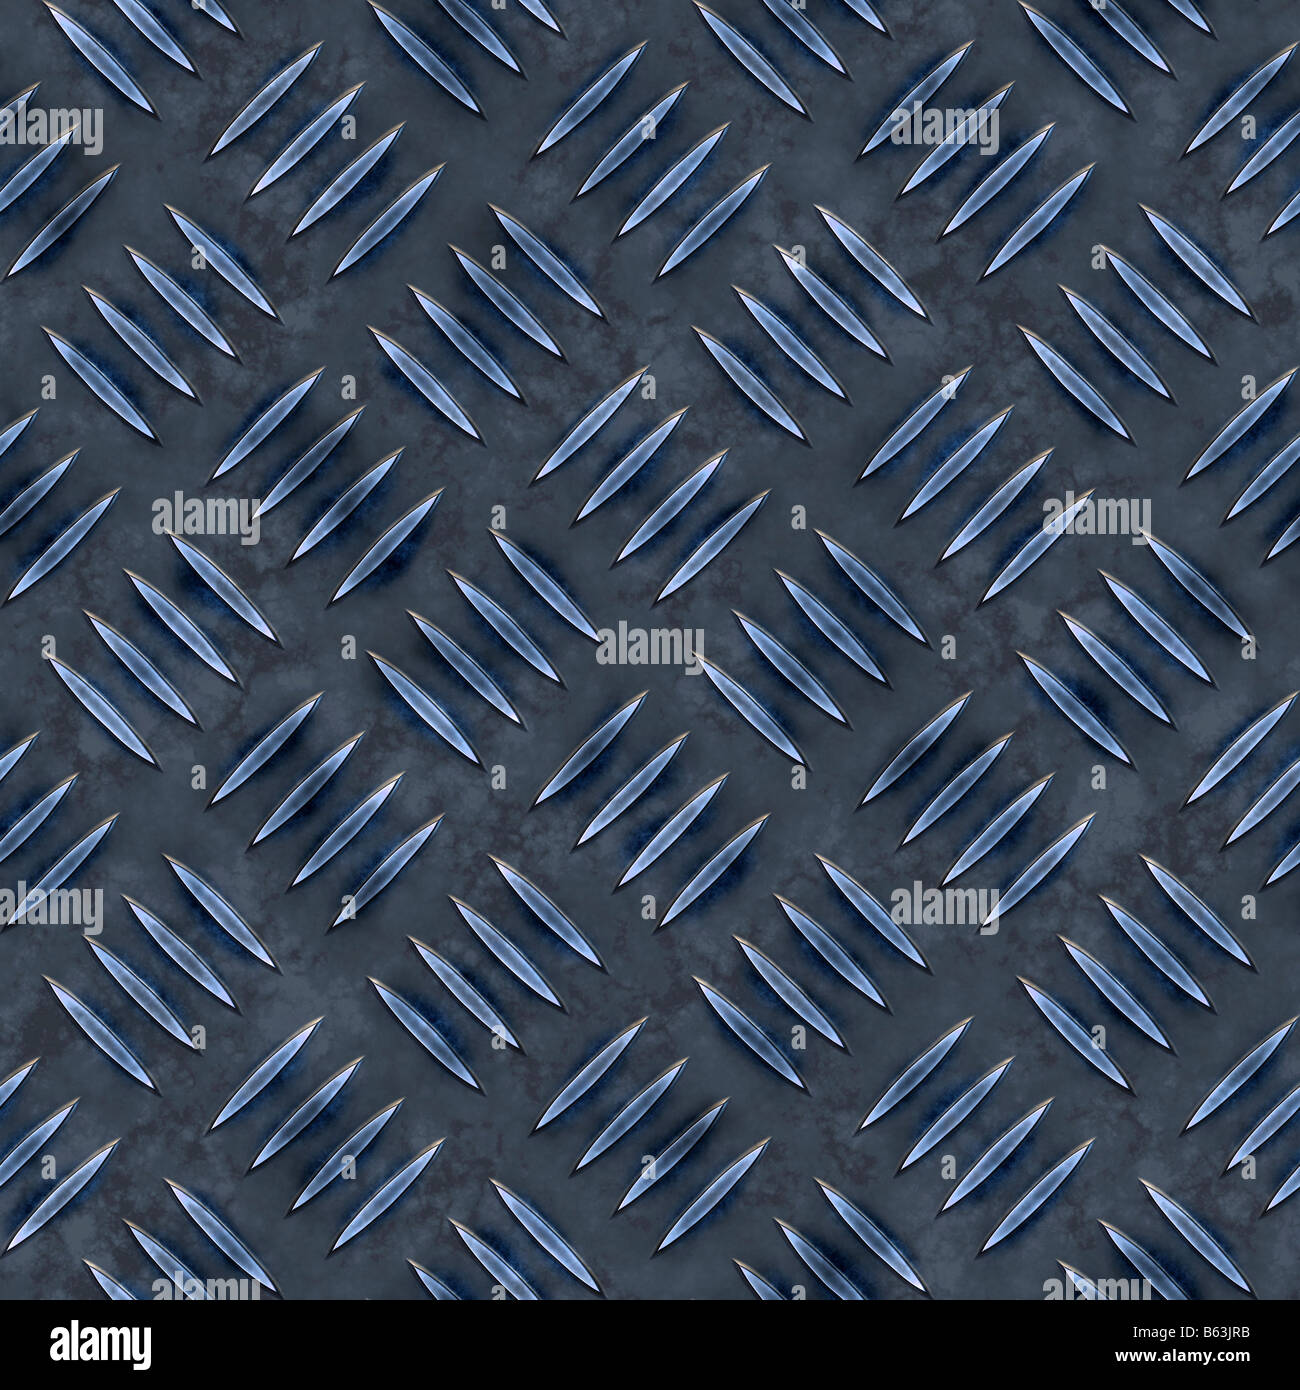 Placa de diamante azul que las baldosas de textura perfectamente como un patrón en cualquier dirección Foto de stock